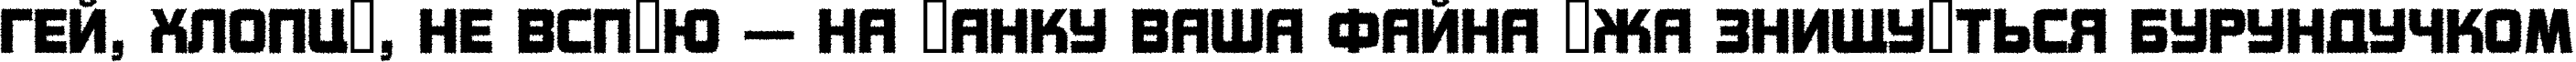 Пример написания шрифтом a_ConceptoTitulRough текста на украинском